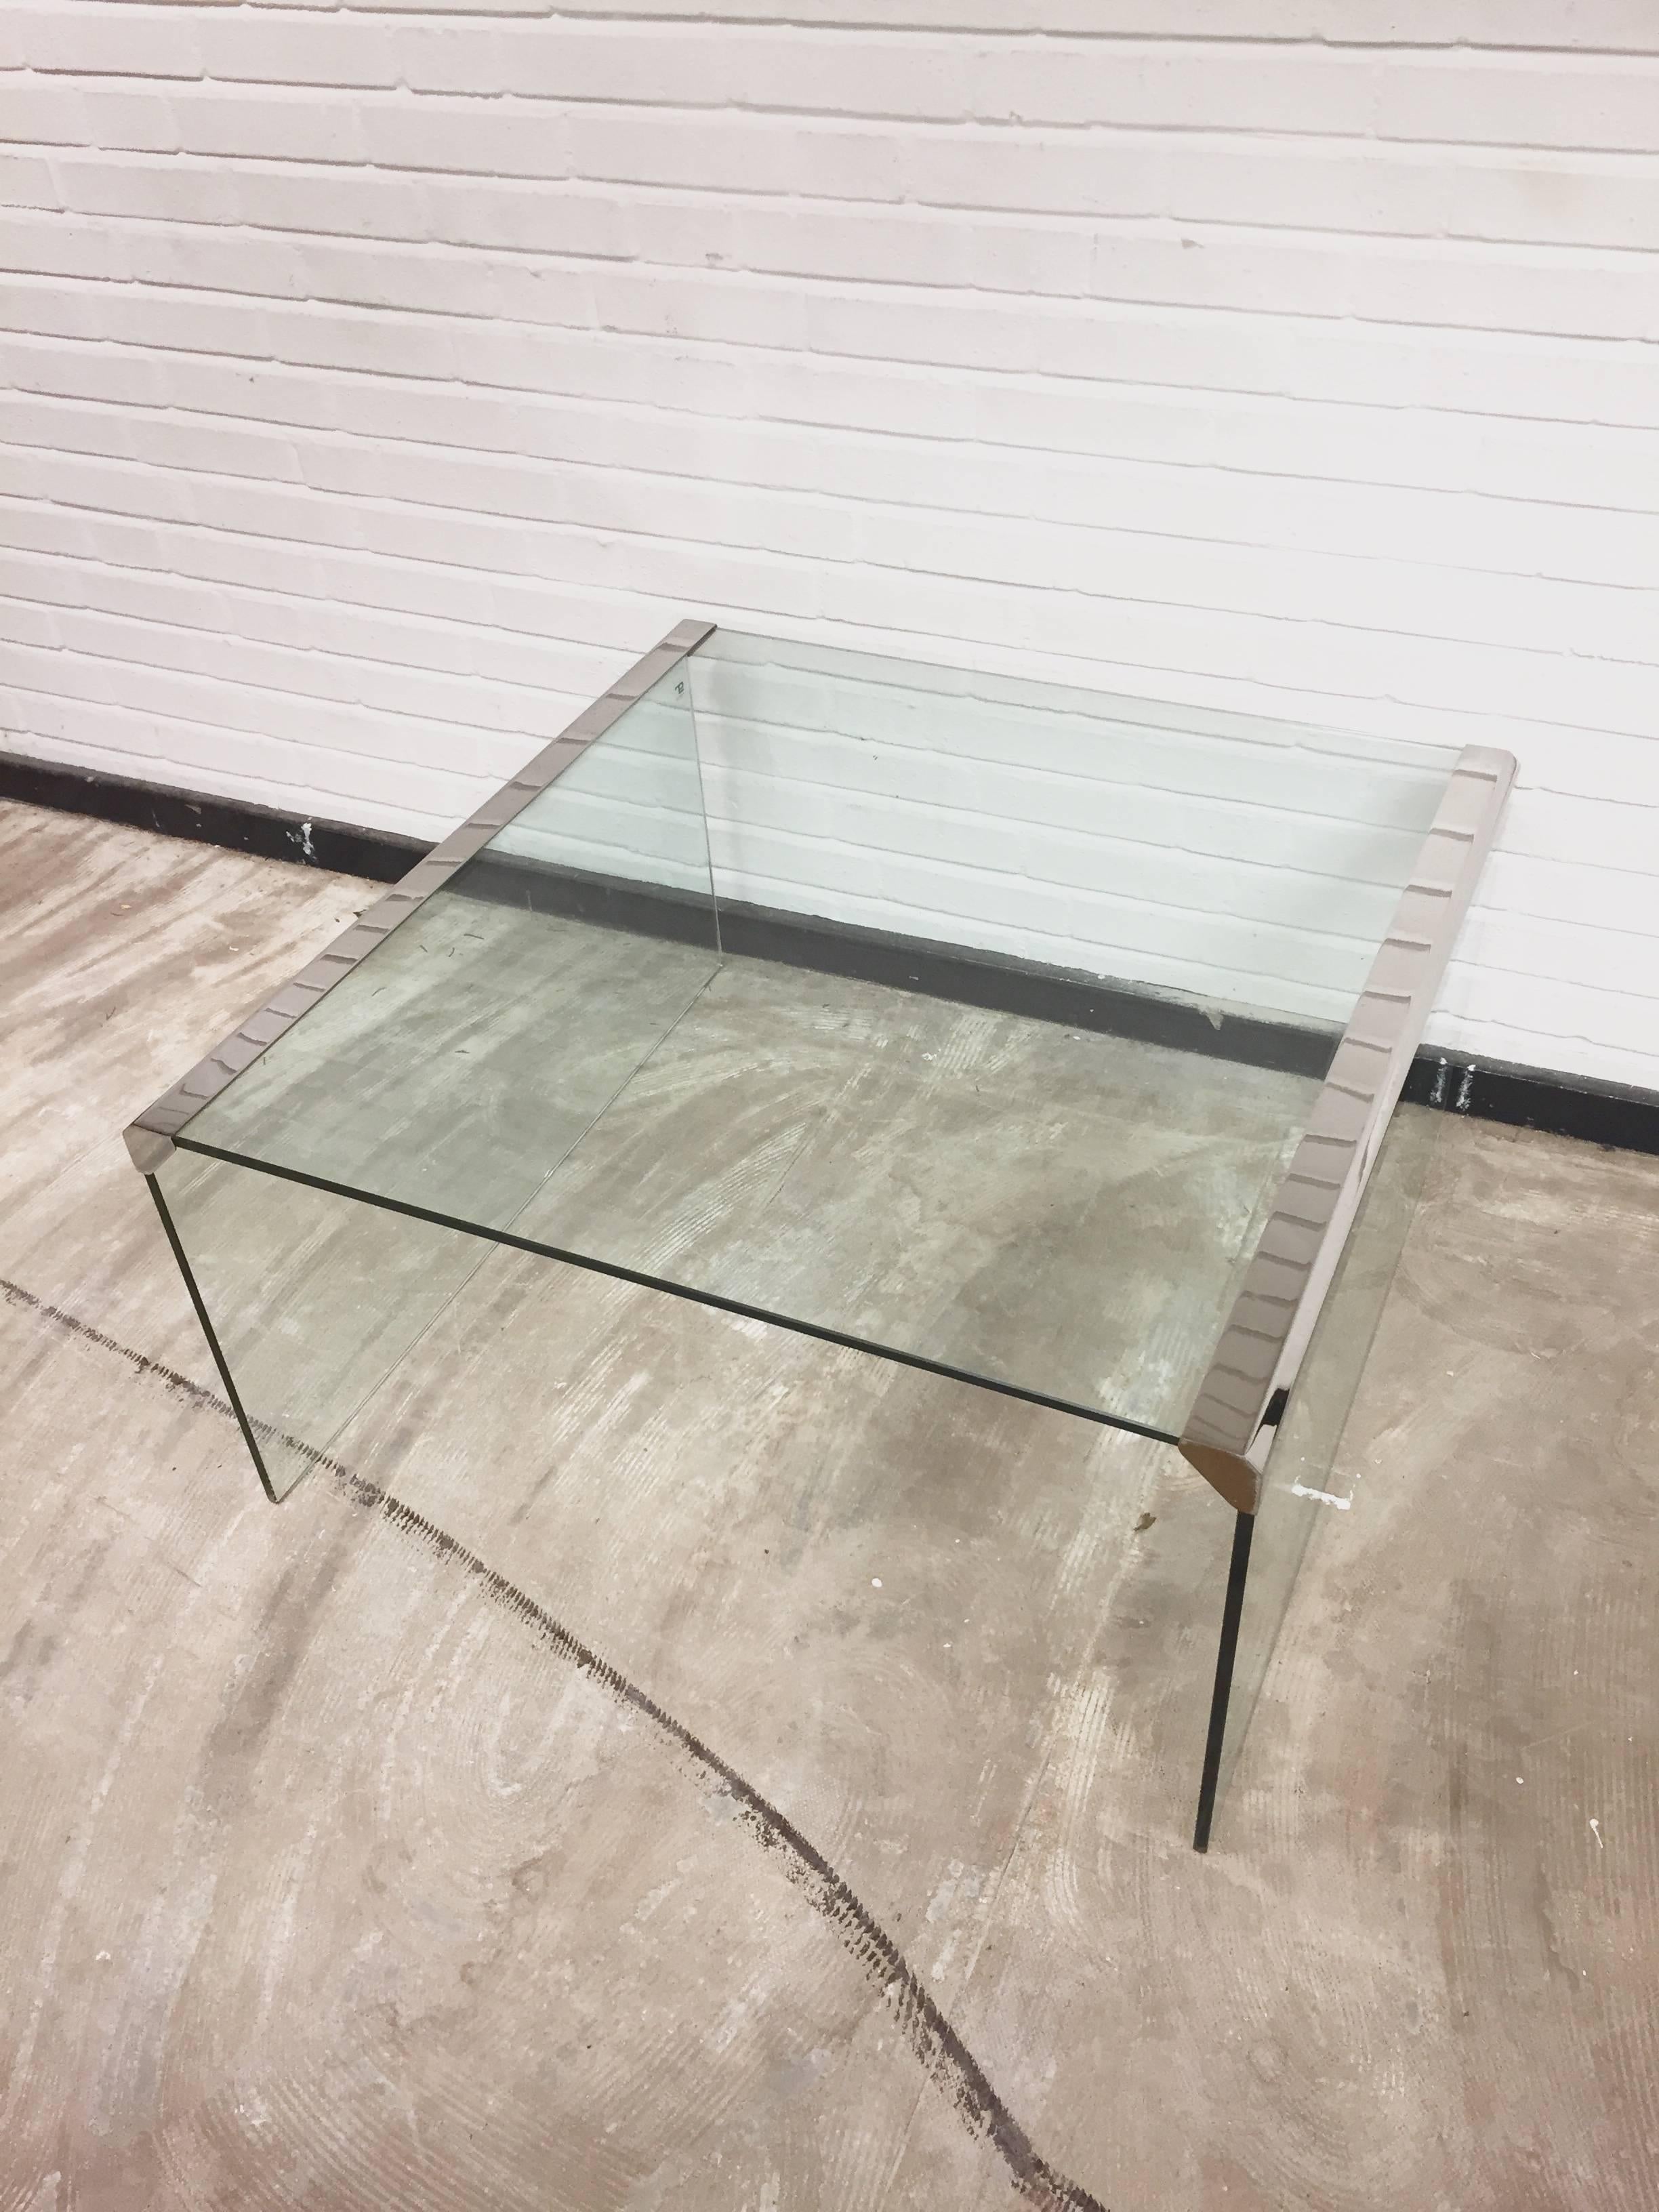 Cette table basse, modèle T33, a été conçue par Pierangelo Gallotti pour sa société Gallotti & Radice en 1982. Il est doté d'un épais plateau en verre trempé transparent et de bords en acier inoxydable. La table est dans un bon état vintage avec